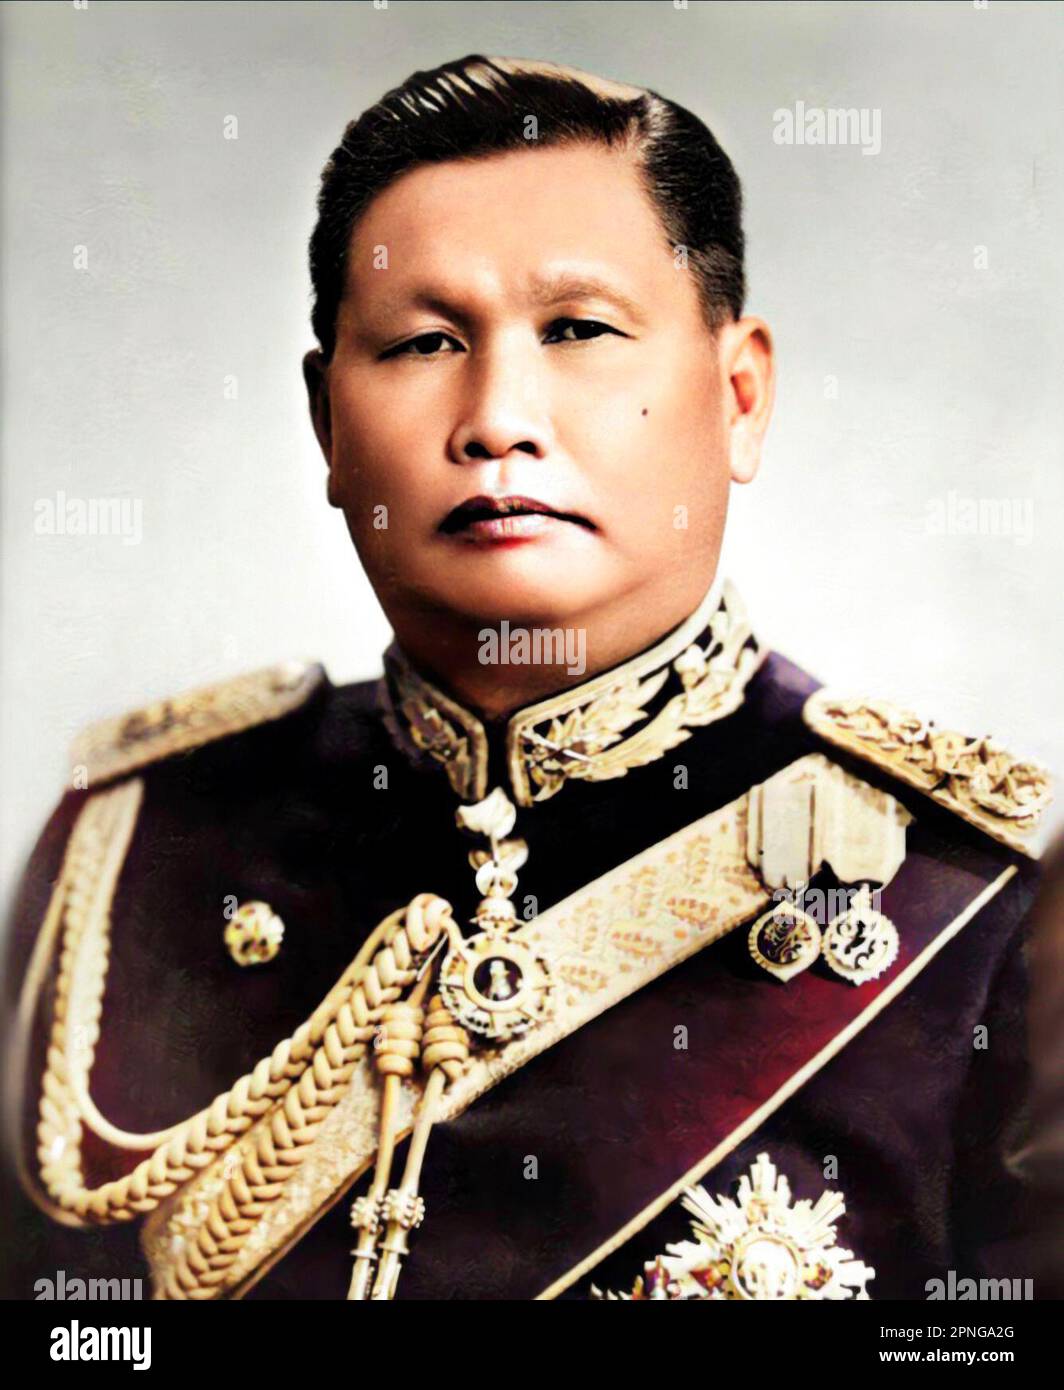 Thailandia: Field Marescial Sarit Thanarat (16 giugno 1908 – 8 dicembre 1963), primo ministro della Thailandia 1959 - 1963. Sarit Thanarat fu un soldato di carriera thailandese che ha messo in scena un colpo di stato nel 1957, in seguito servì come primo ministro thailandese fino alla sua morte nel 1963. Il regime di Salit fu il più repressivo e autoritario della storia tailandese moderna, abrogando la costituzione, sciogliendo il parlamento e vendicando ogni potere nel suo partito rivoluzionario appena formato. Sarit ha vietato tutti gli altri partiti politici, imponendo una censura molto rigorosa della stampa dopo il colpo di stato. Foto Stock